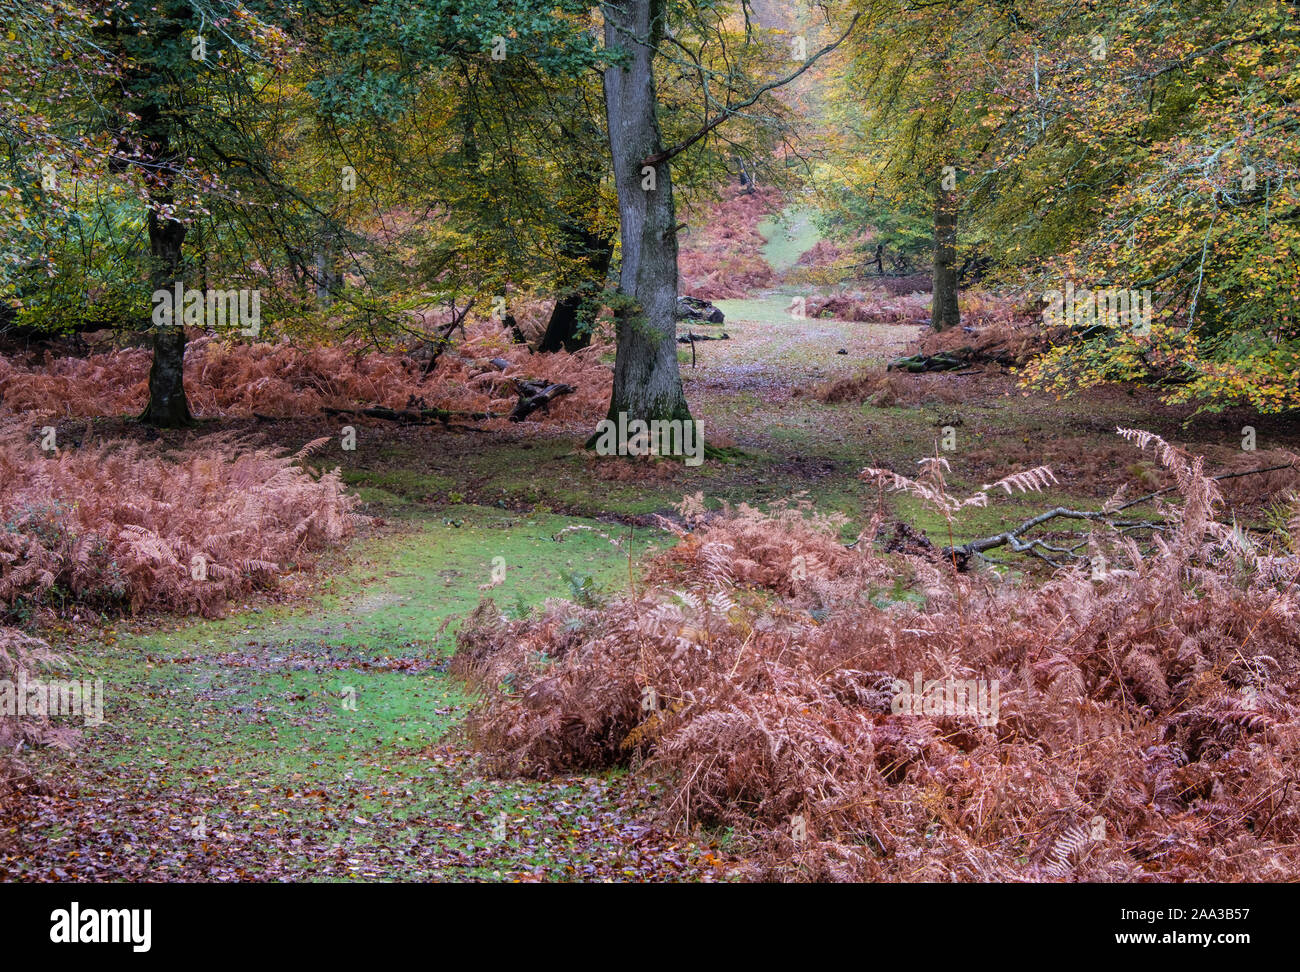 Neuen Wald, Bäume und Adlerfarn mit Farben des Herbstes, Hampshire, England, UK. Stockfoto